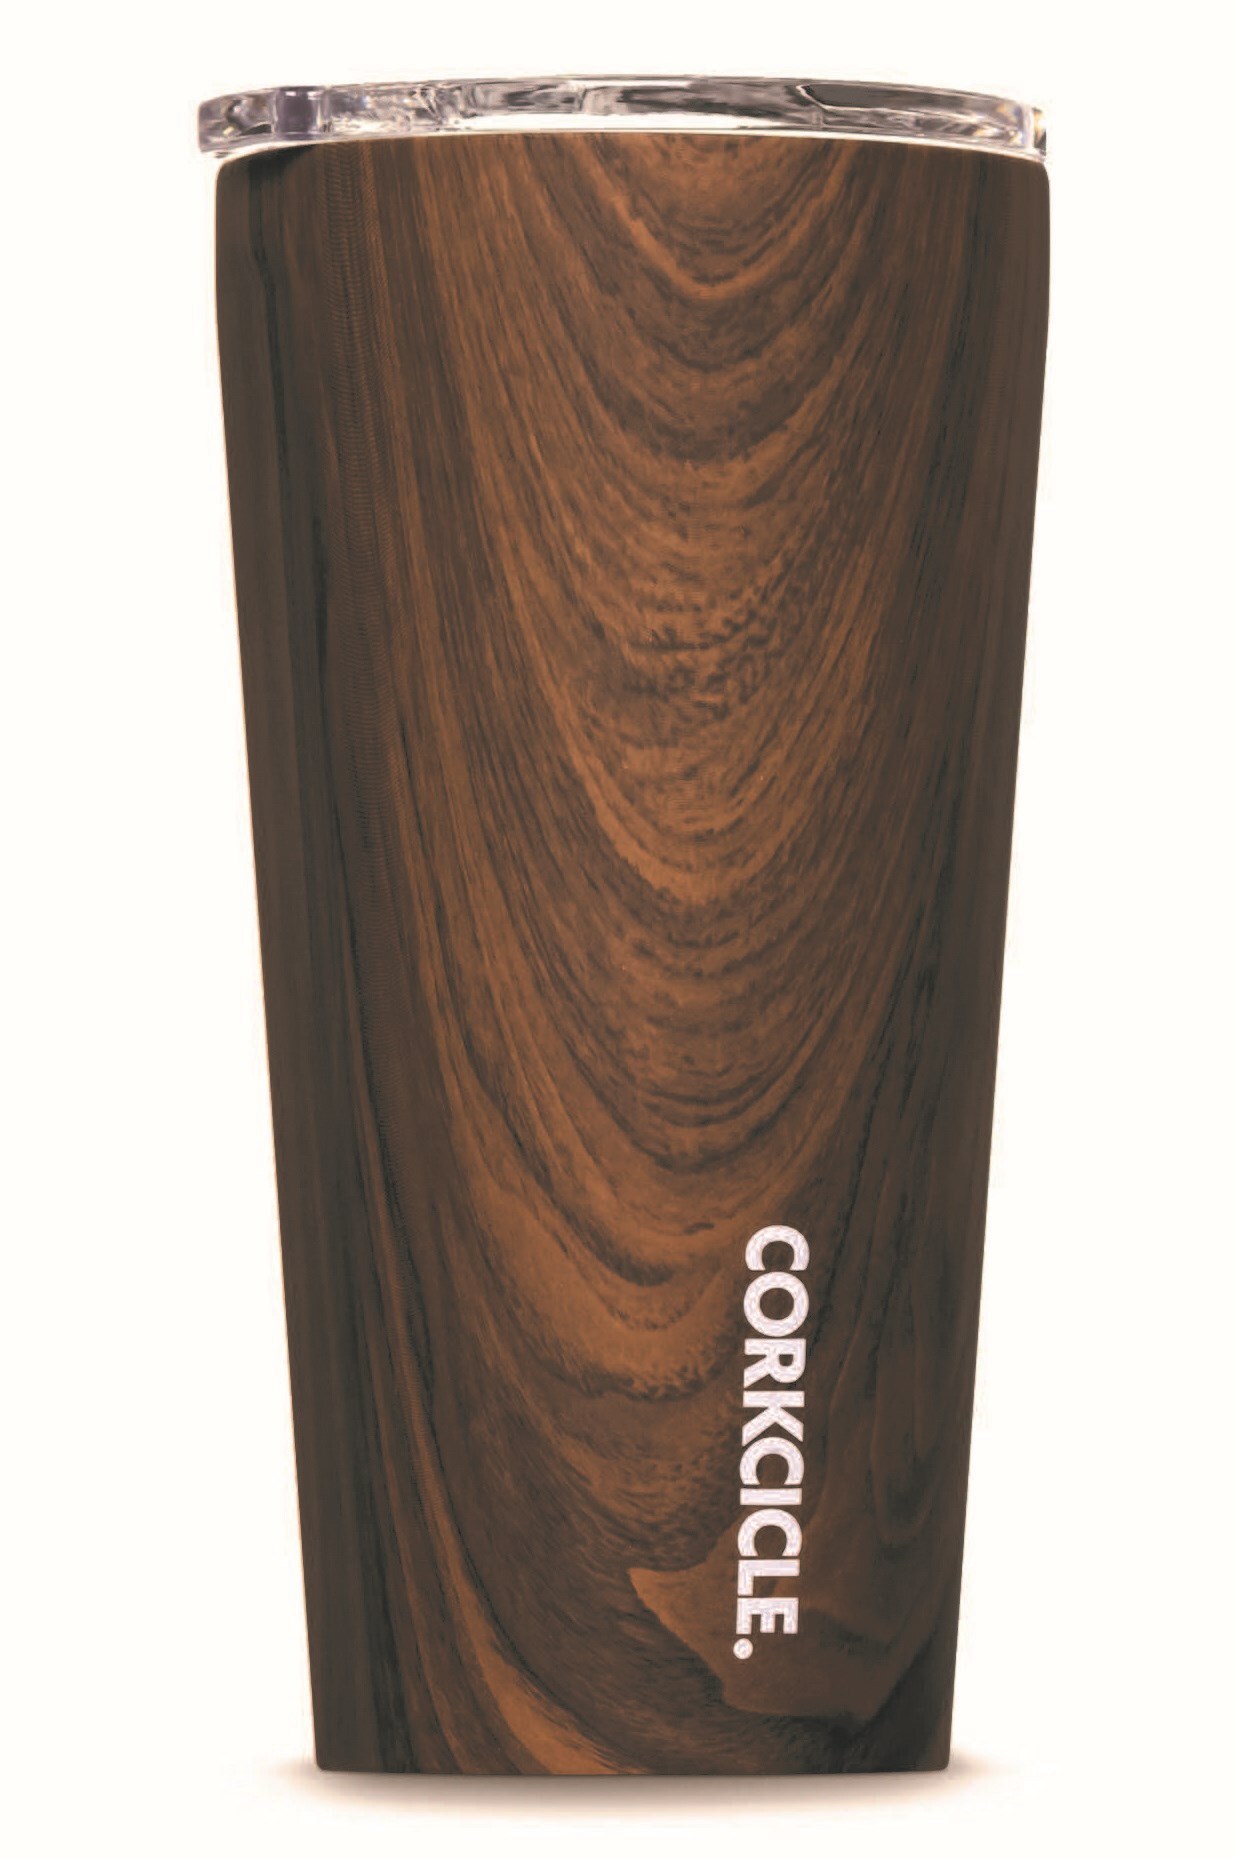 Corkcicle 16 oz Tumbler - Walnut Wood